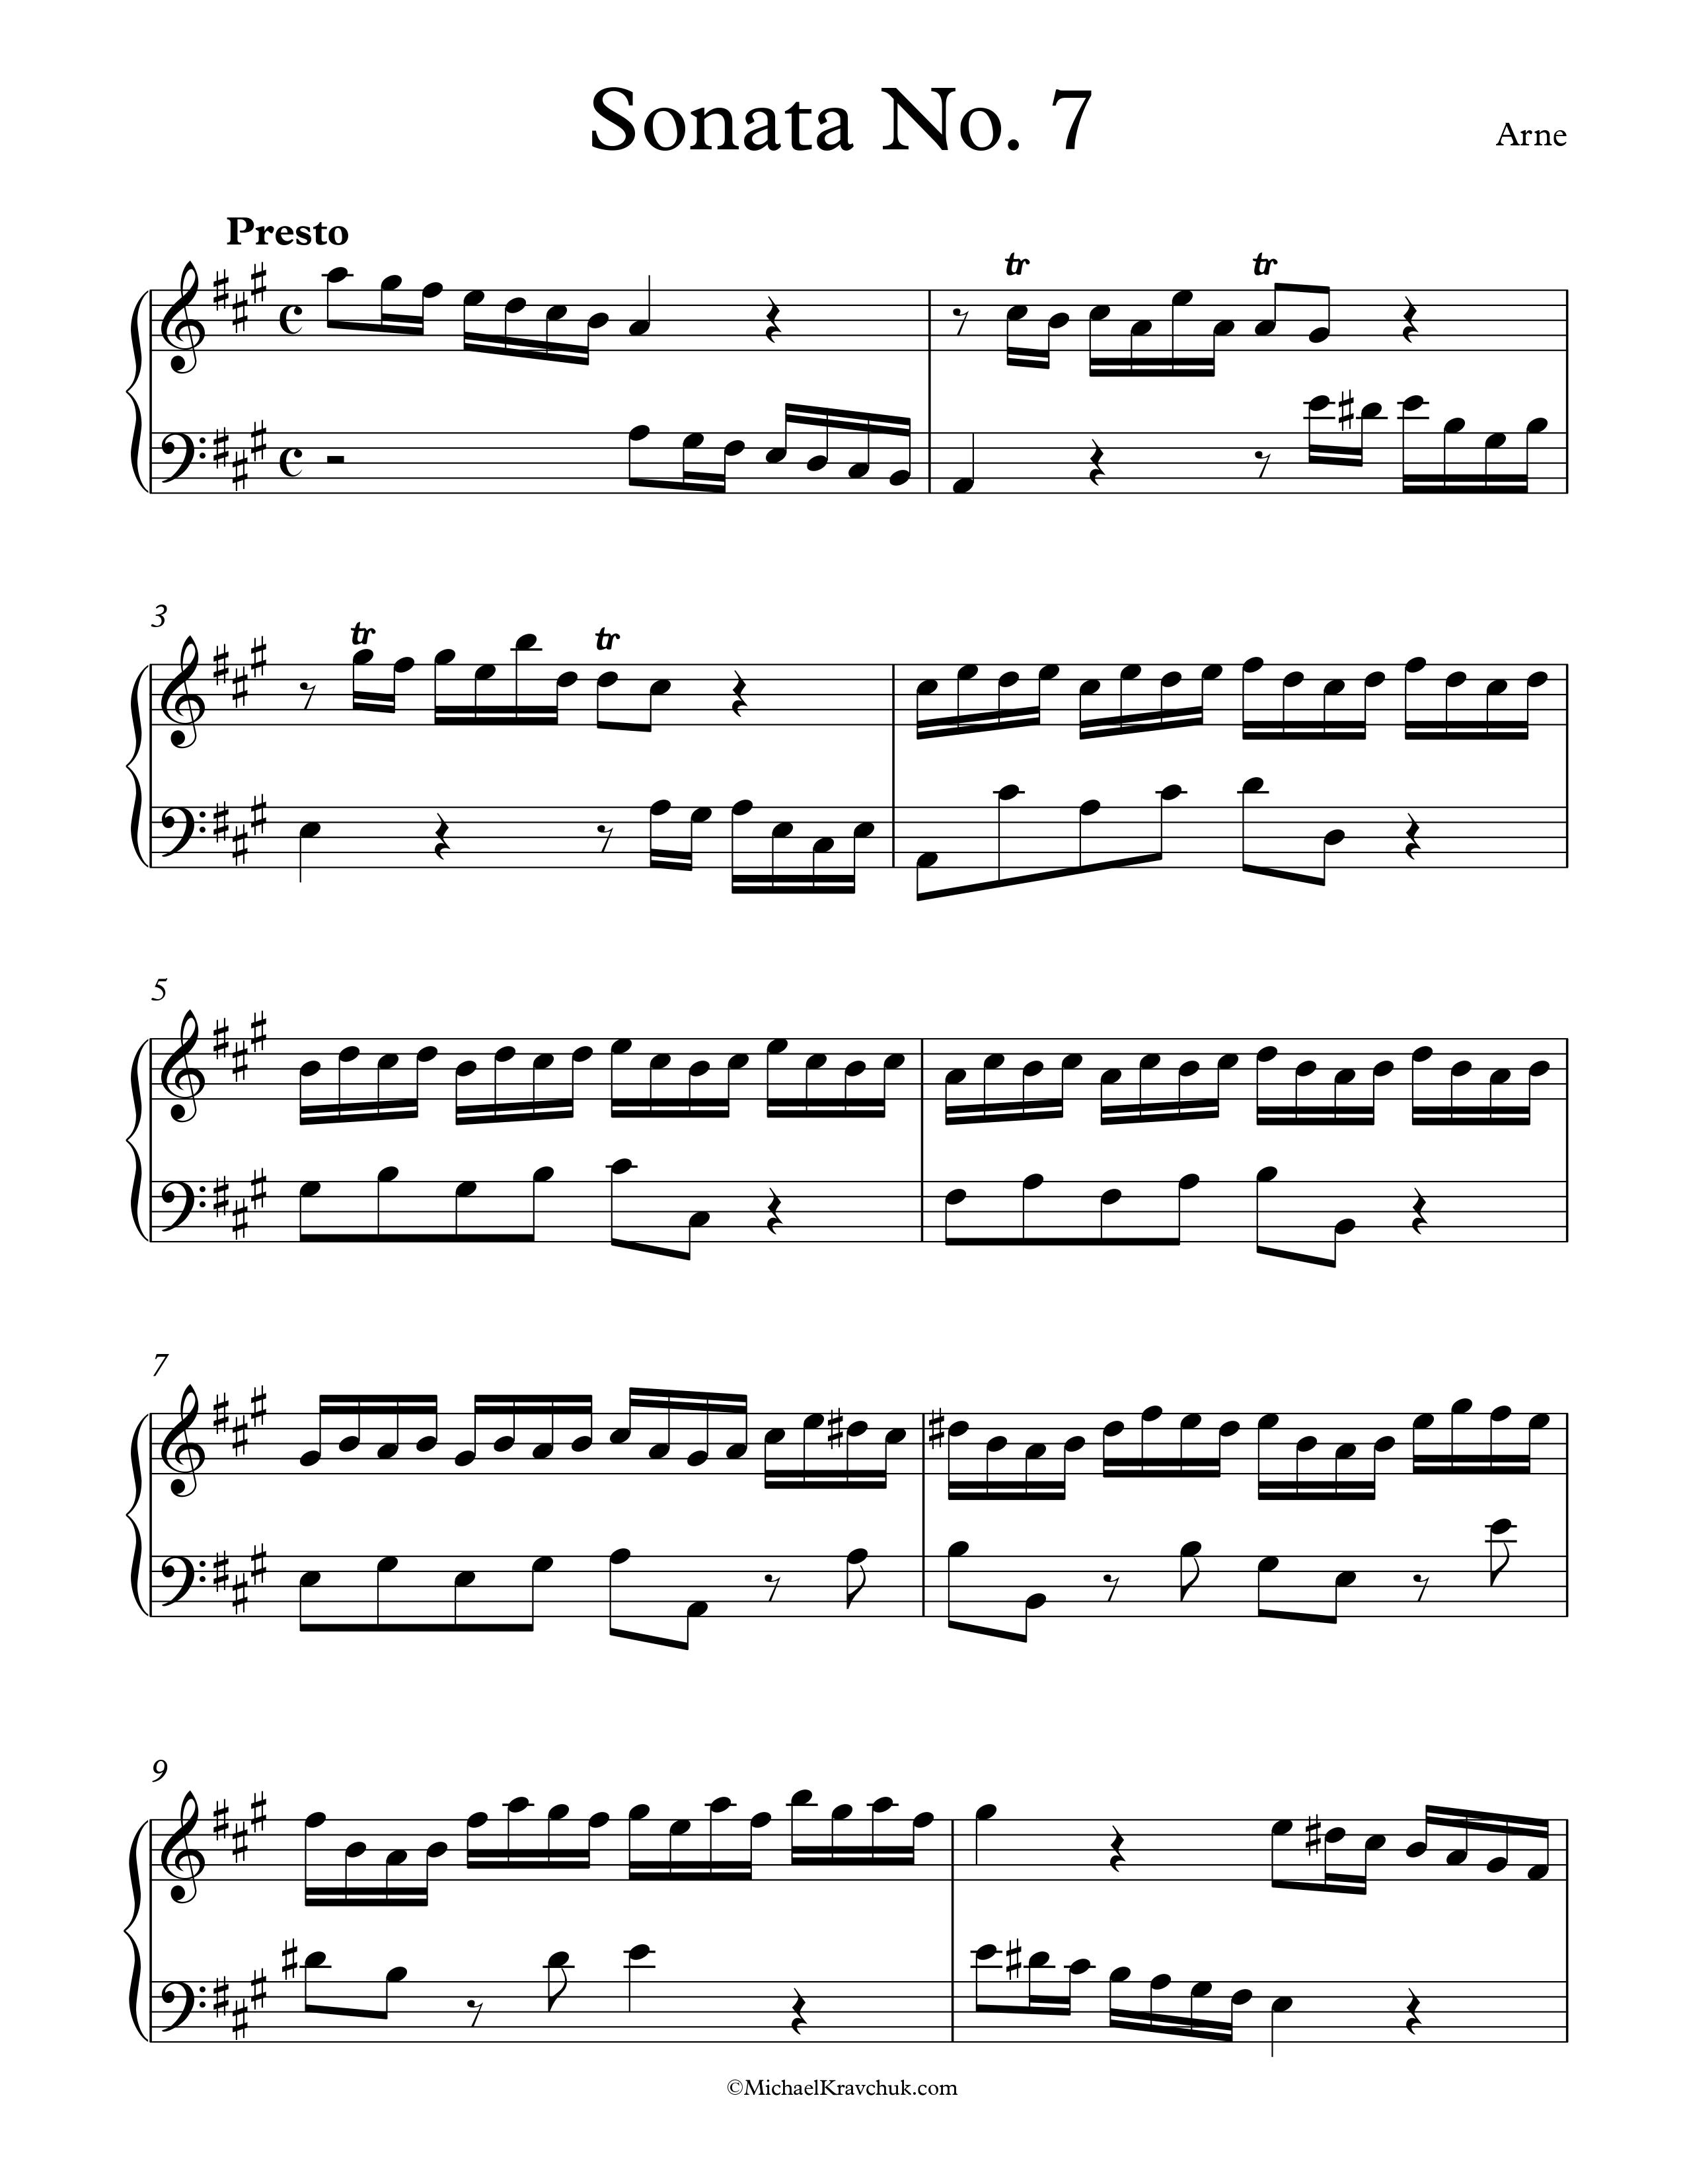 Free Piano Sheet Music - Sonata No. 7 - Arne